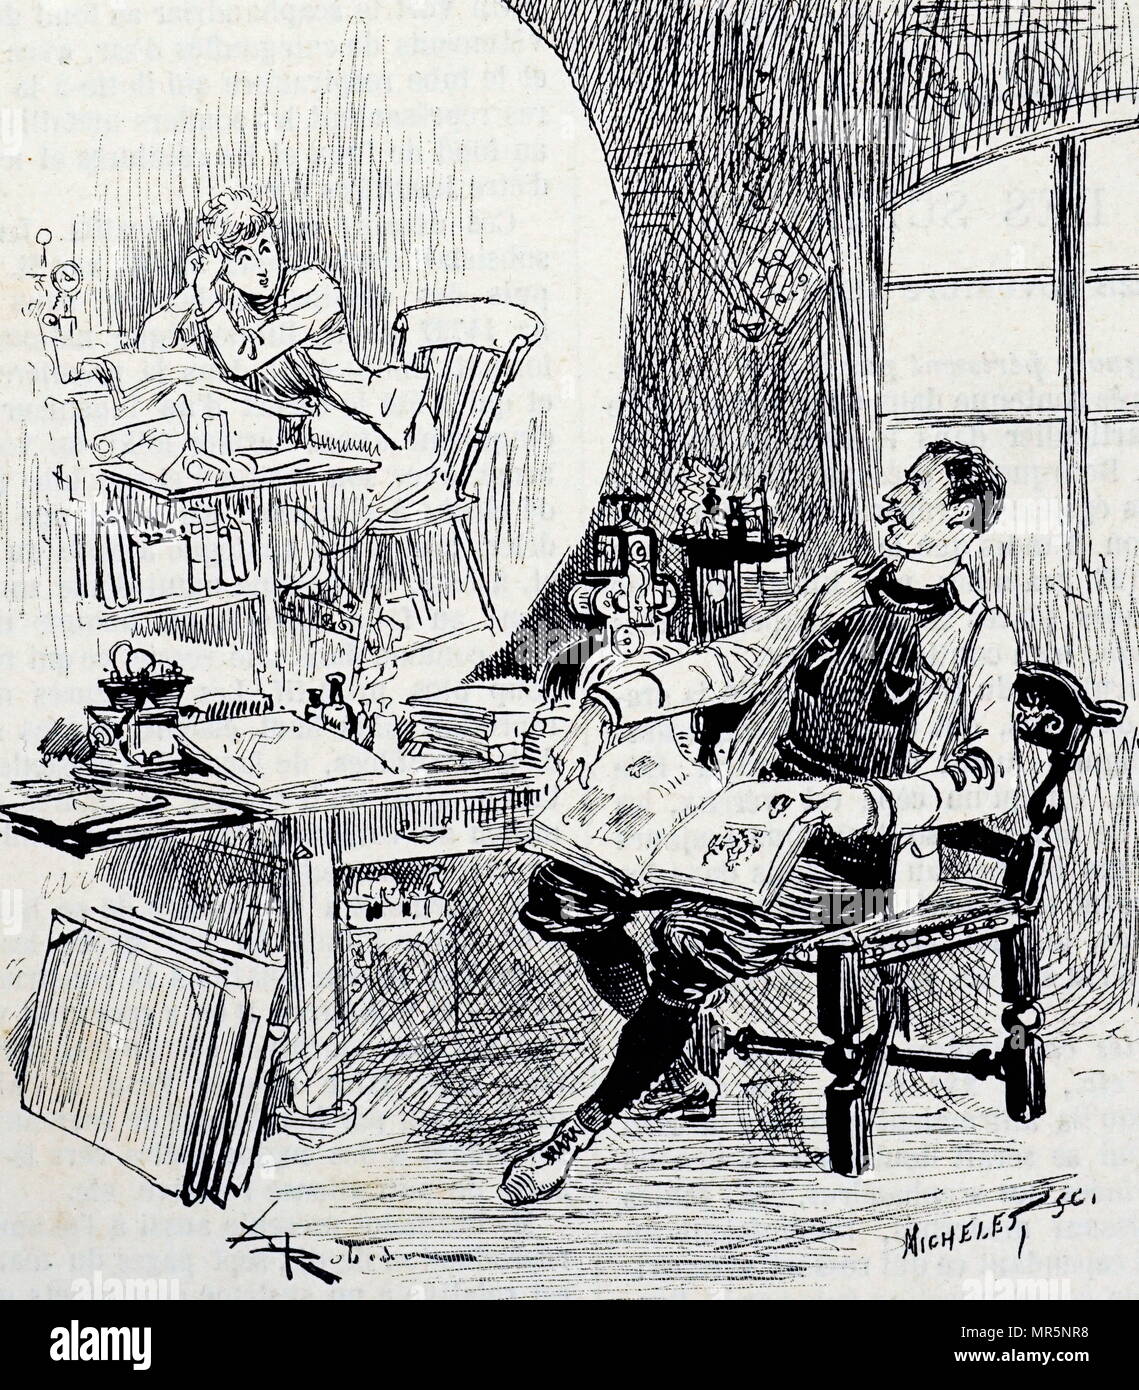 Cartoon zu den möglichen Gefahren der Video - Telefon - Privatsphäre wurde durch eine falsche Verbindung verletzt worden. Vom 19. Jahrhundert Stockfoto